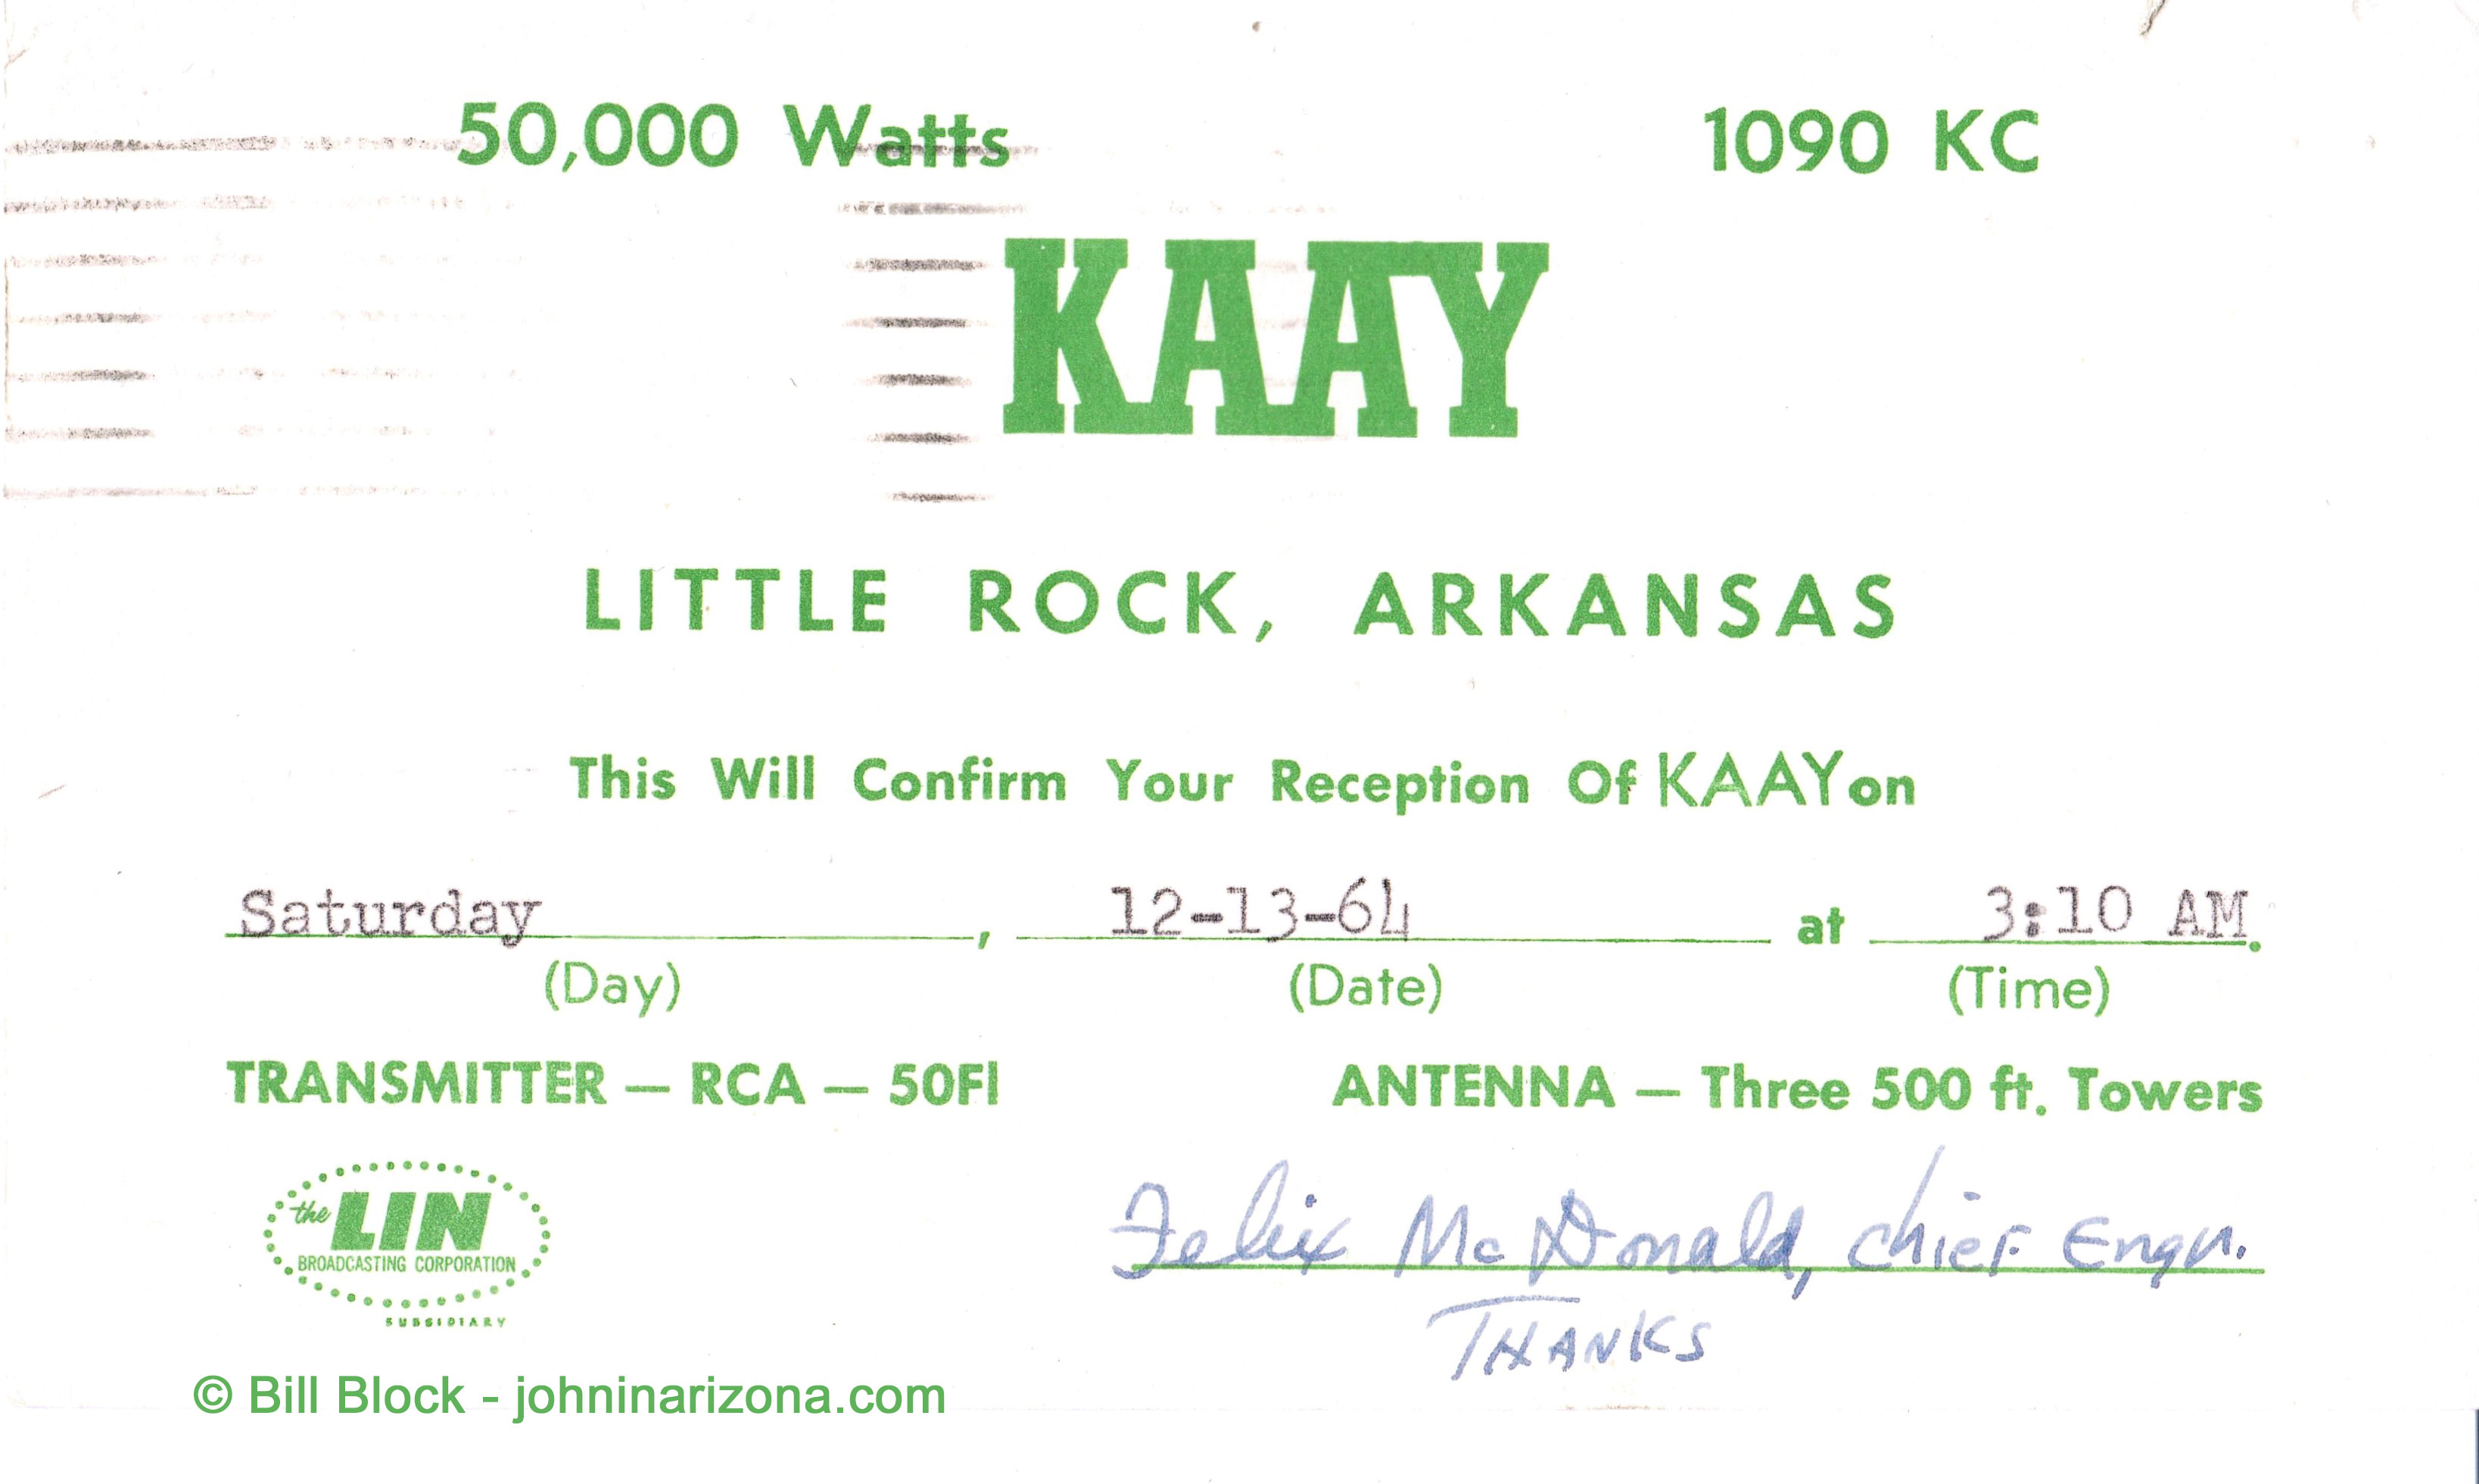 KAAY Radio 1090 Little Rock, Arkansas